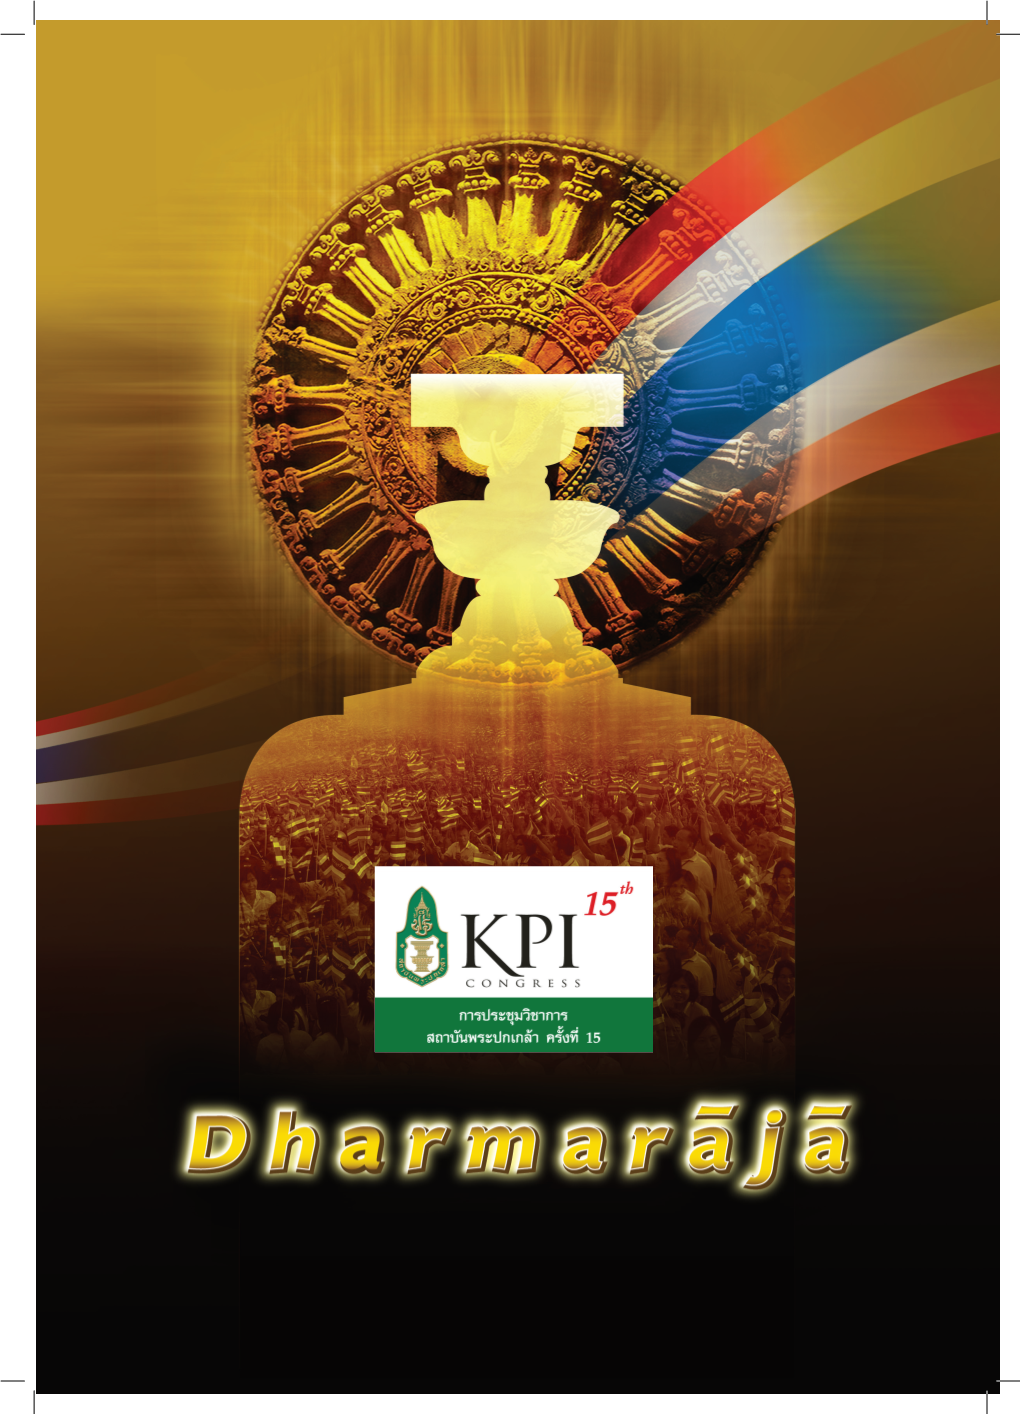 KPI Congress XV Dharmarãjã